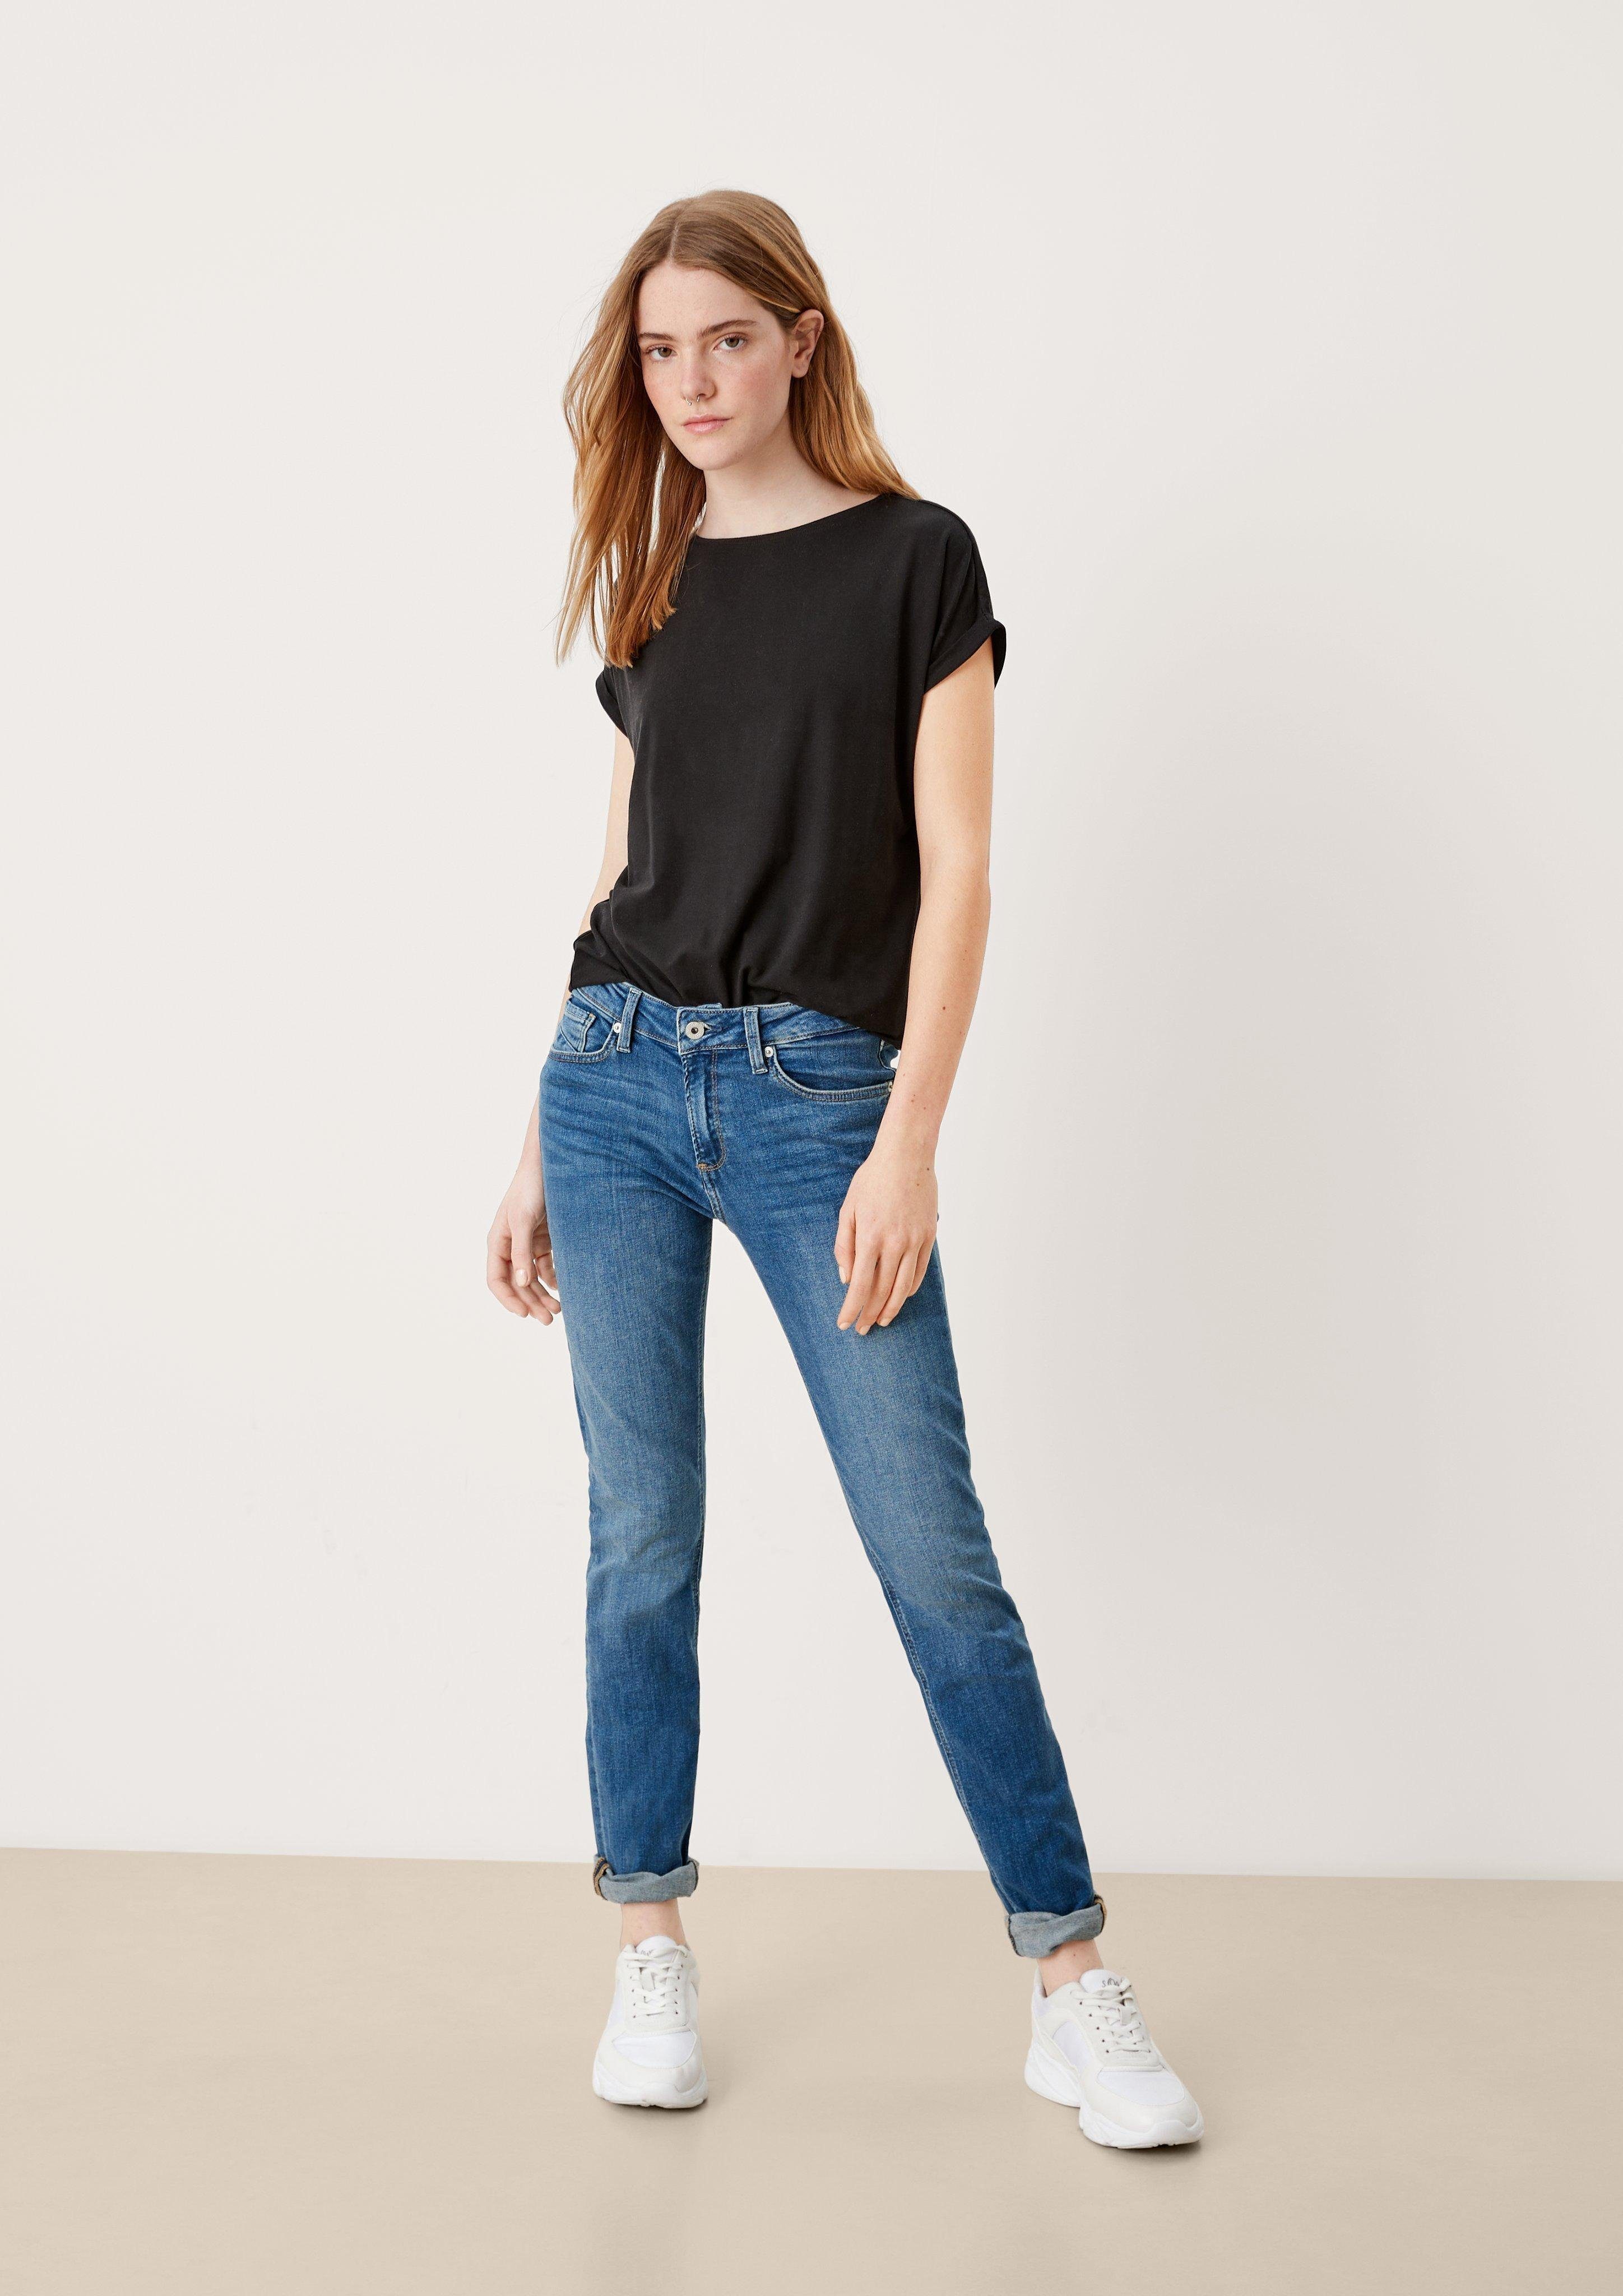 QS Stoffhose Jeans / / Rise / blue Slim Label-Patch Catie Fit Slim Mid Leg